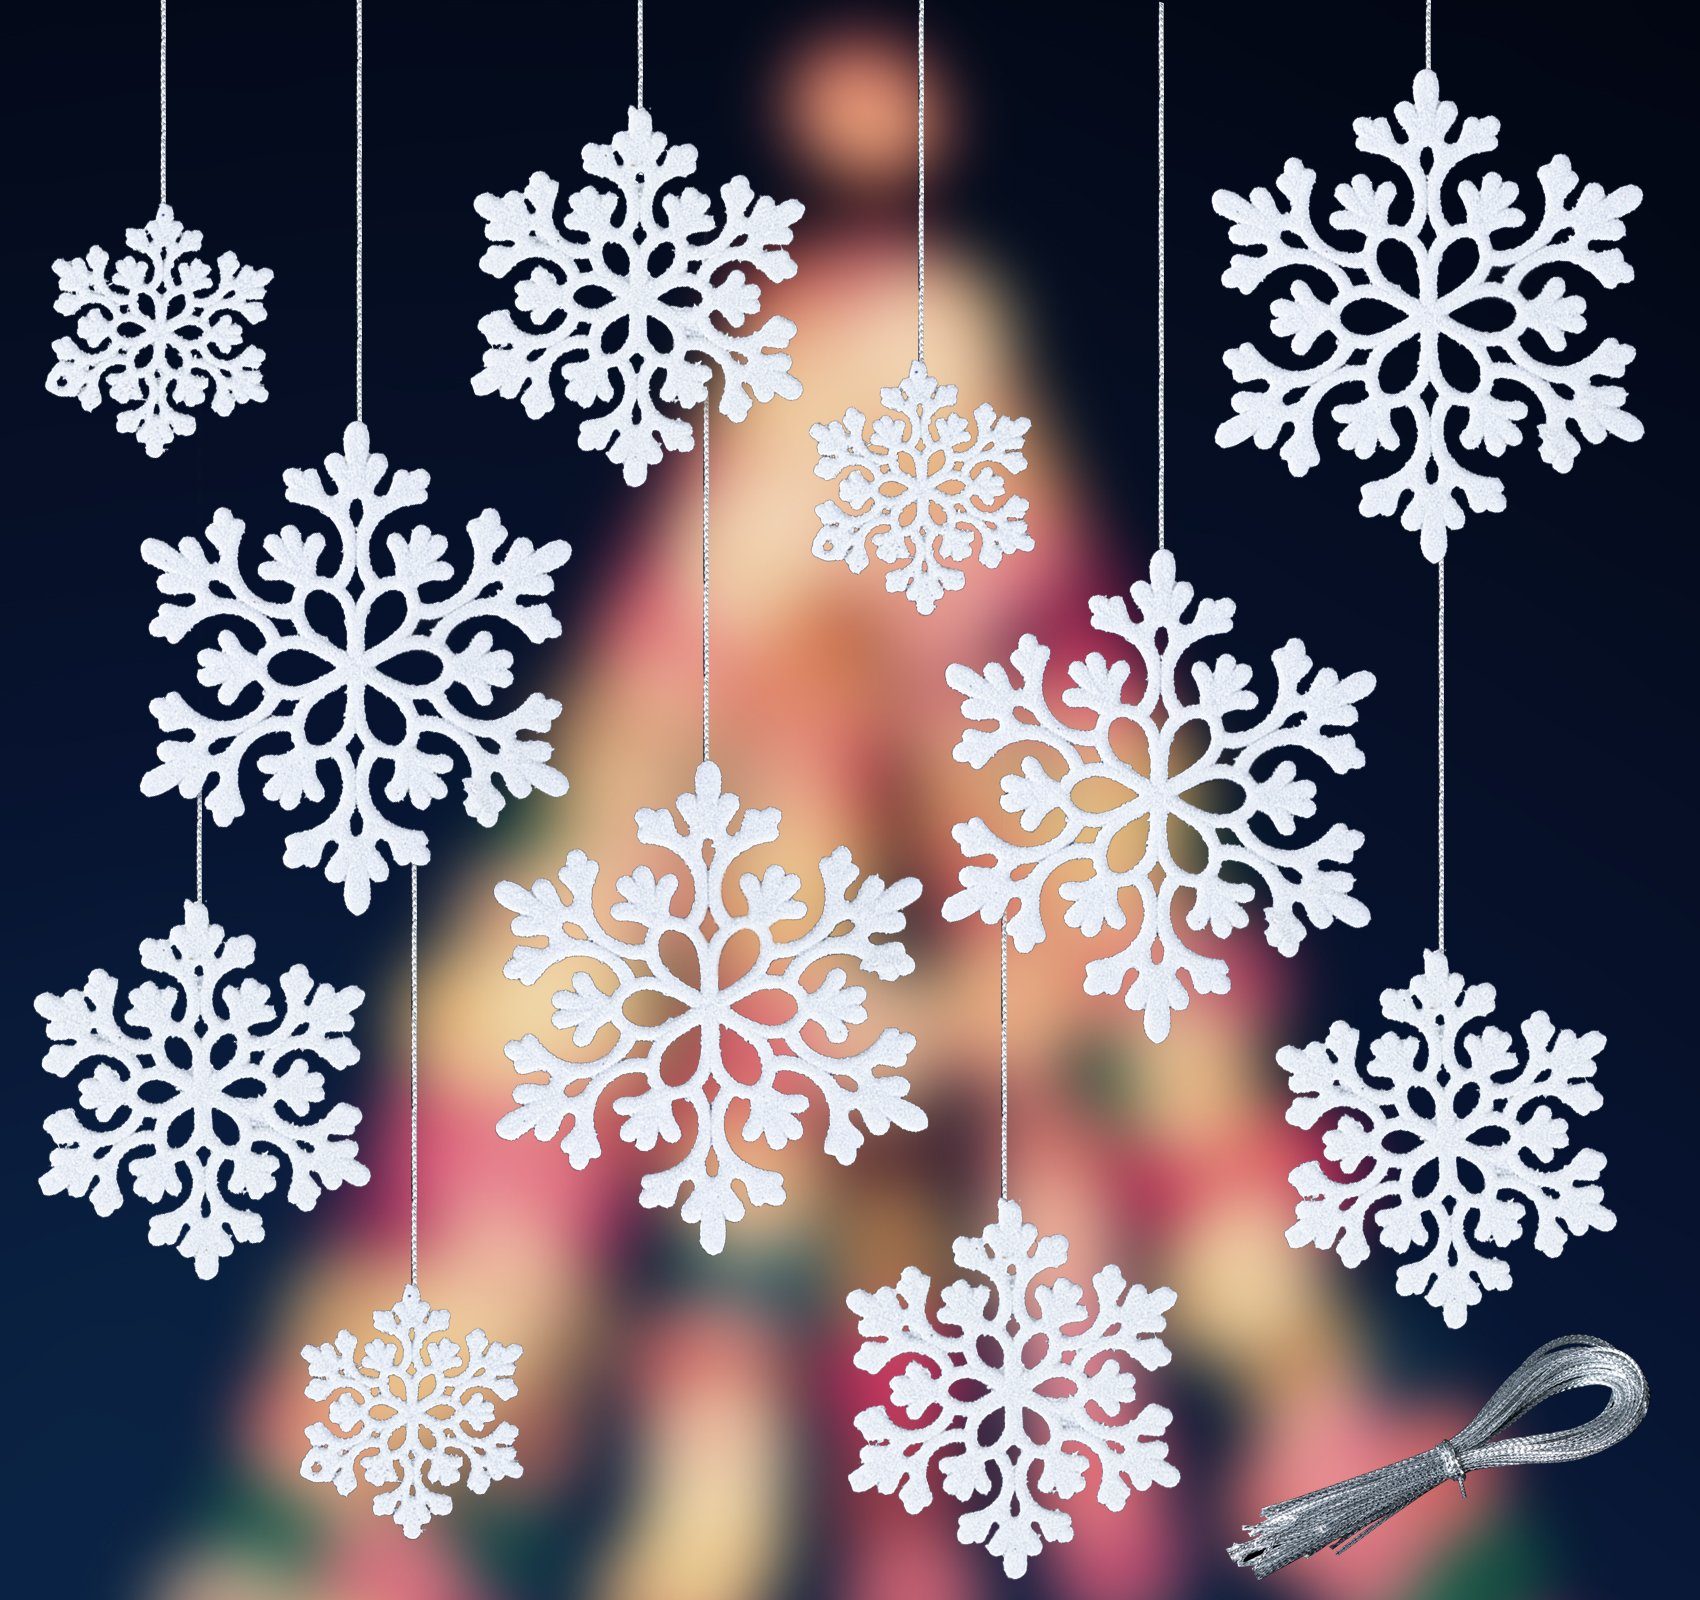 Anhänger Weihnachtsbaum für Deko Silber Set Weihnachten (30-tlg), Glitzer Homewit Schneeflocken Weihnachtsdeko Weihnachtsschmuck Christbaumschmuck